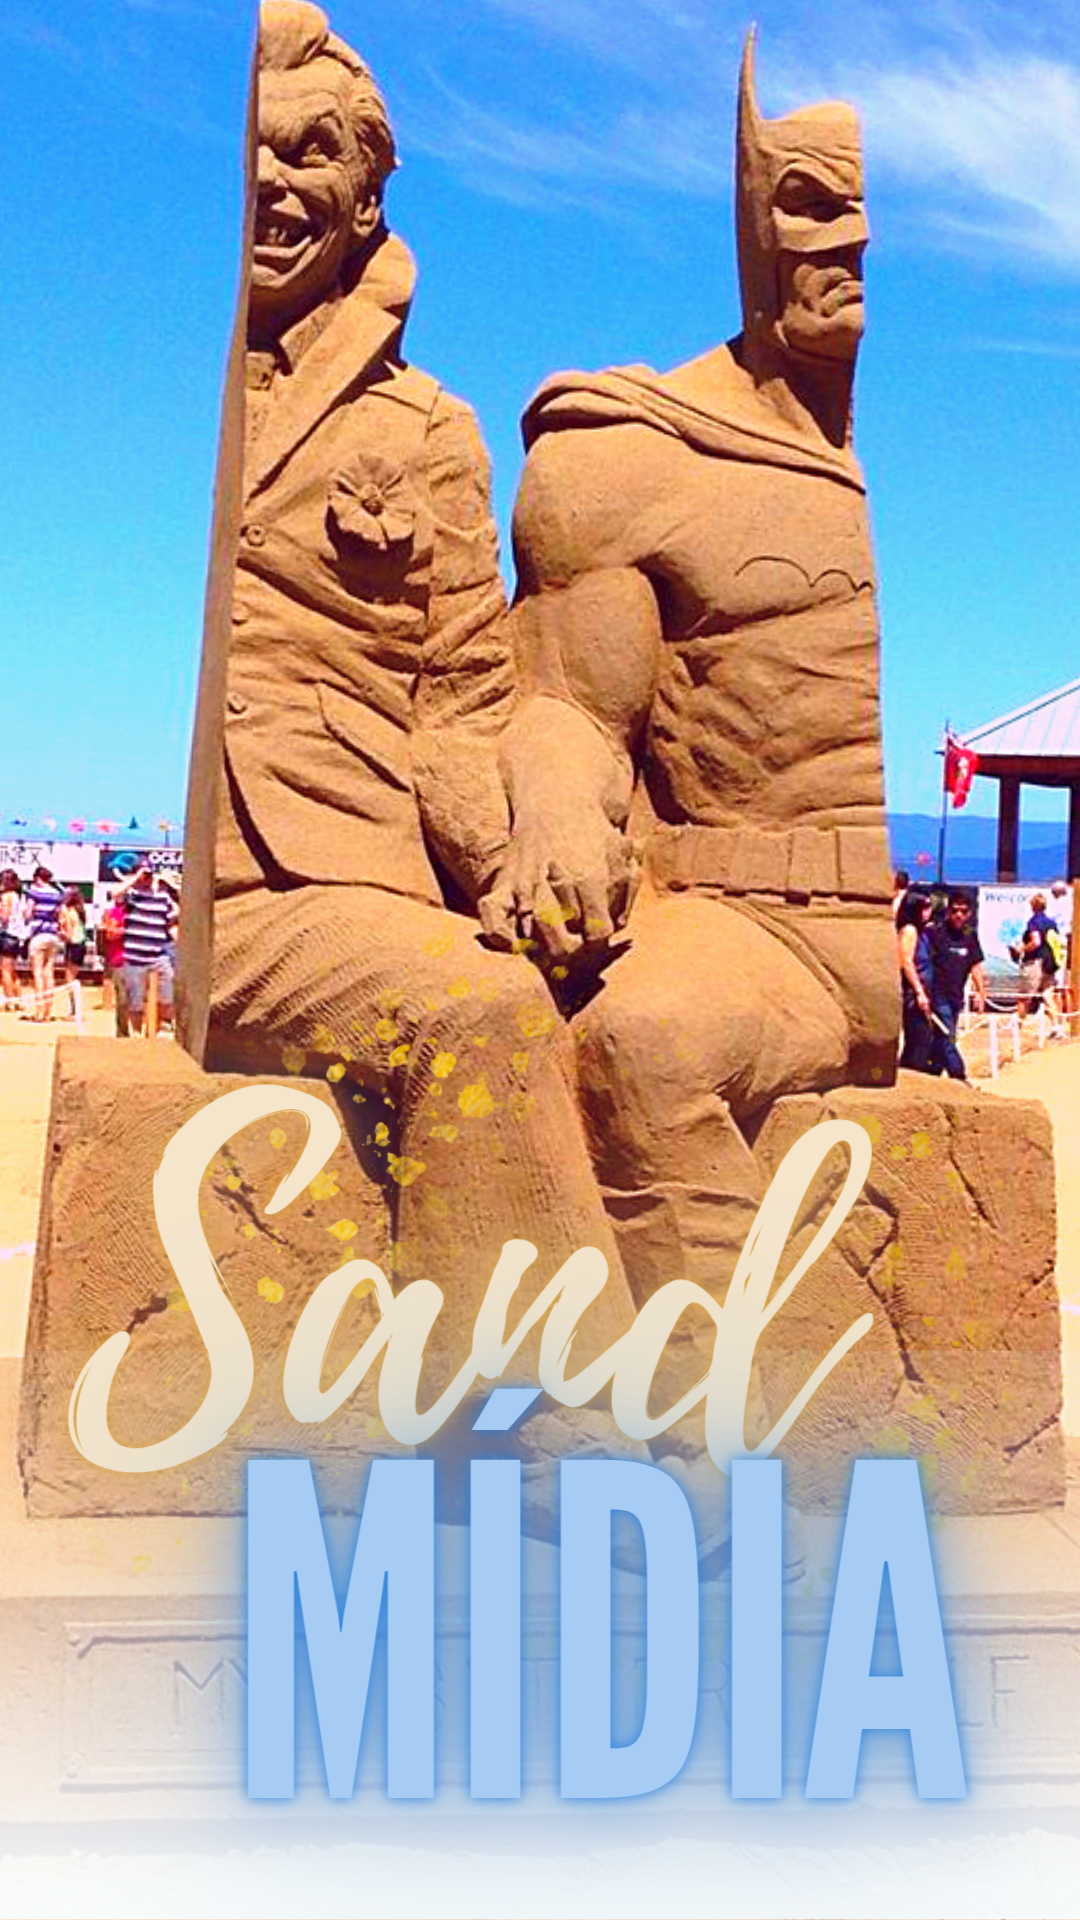 Mídia Ecológica Sand Mídia – Escultura na Areia tecnologia para eventos e feiras